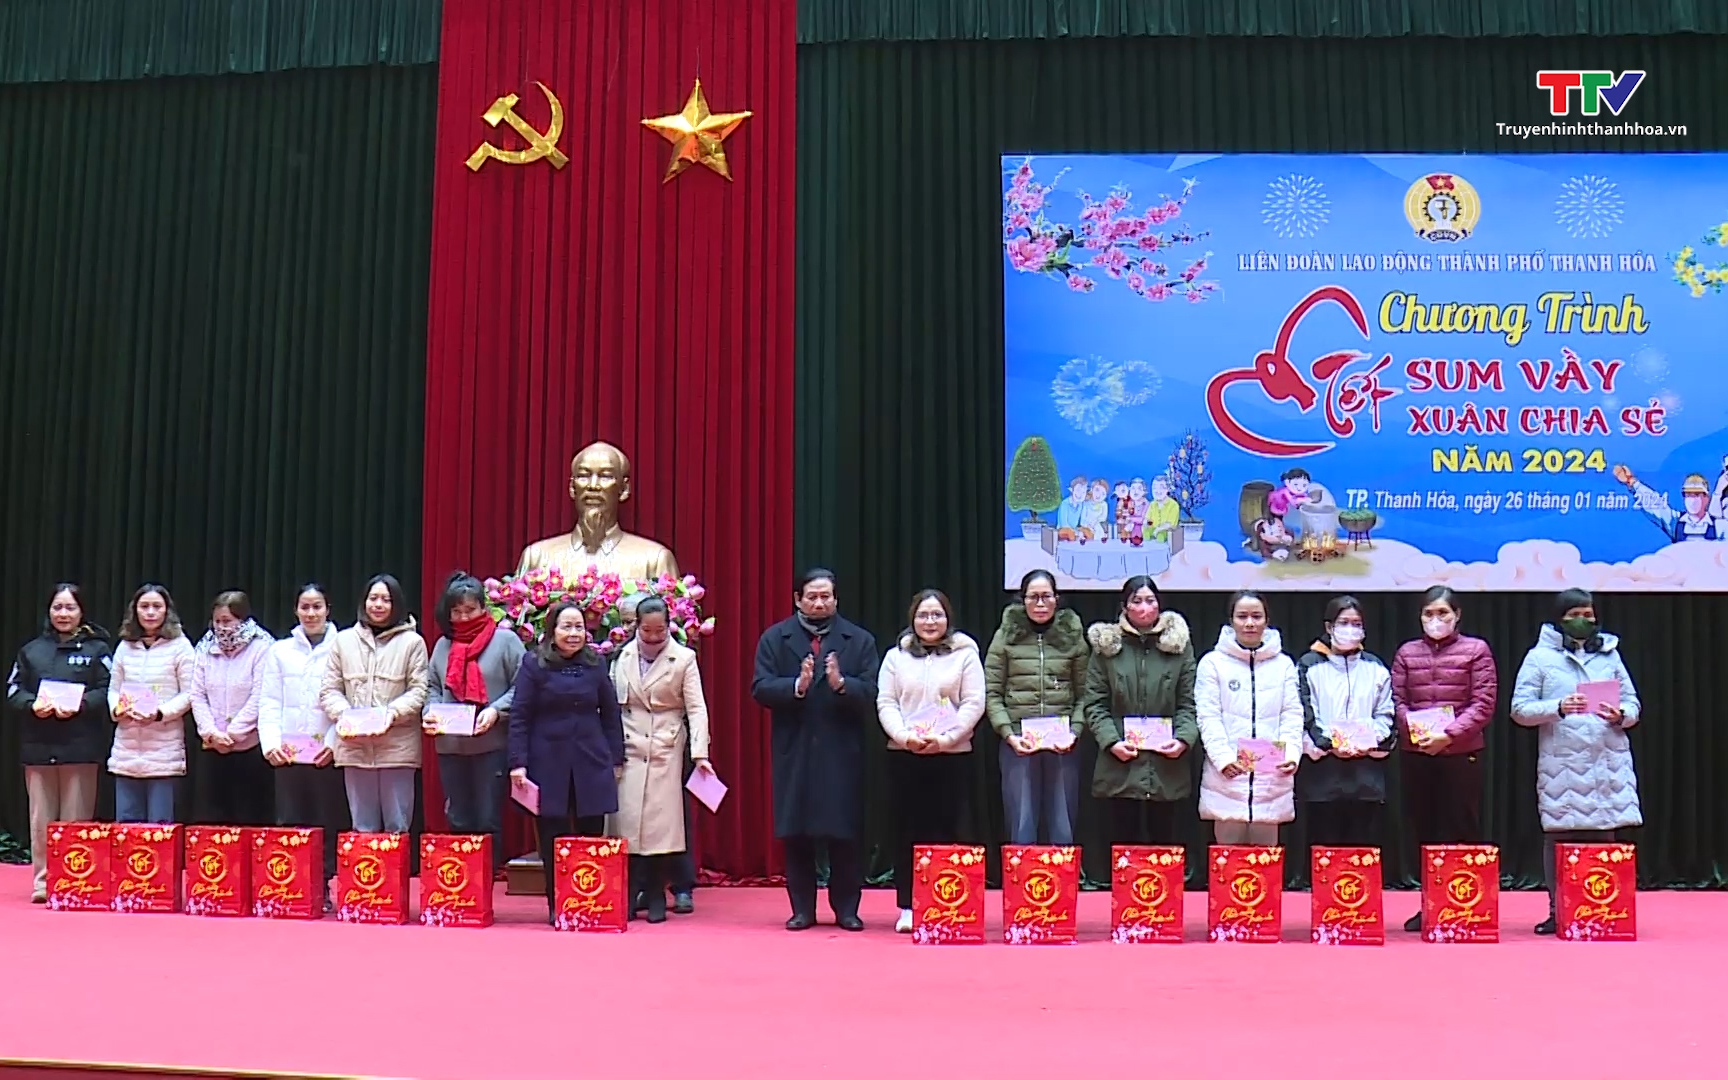 Liên đoàn Lao động thành phố Thanh Hóa tổ chức chương trình 